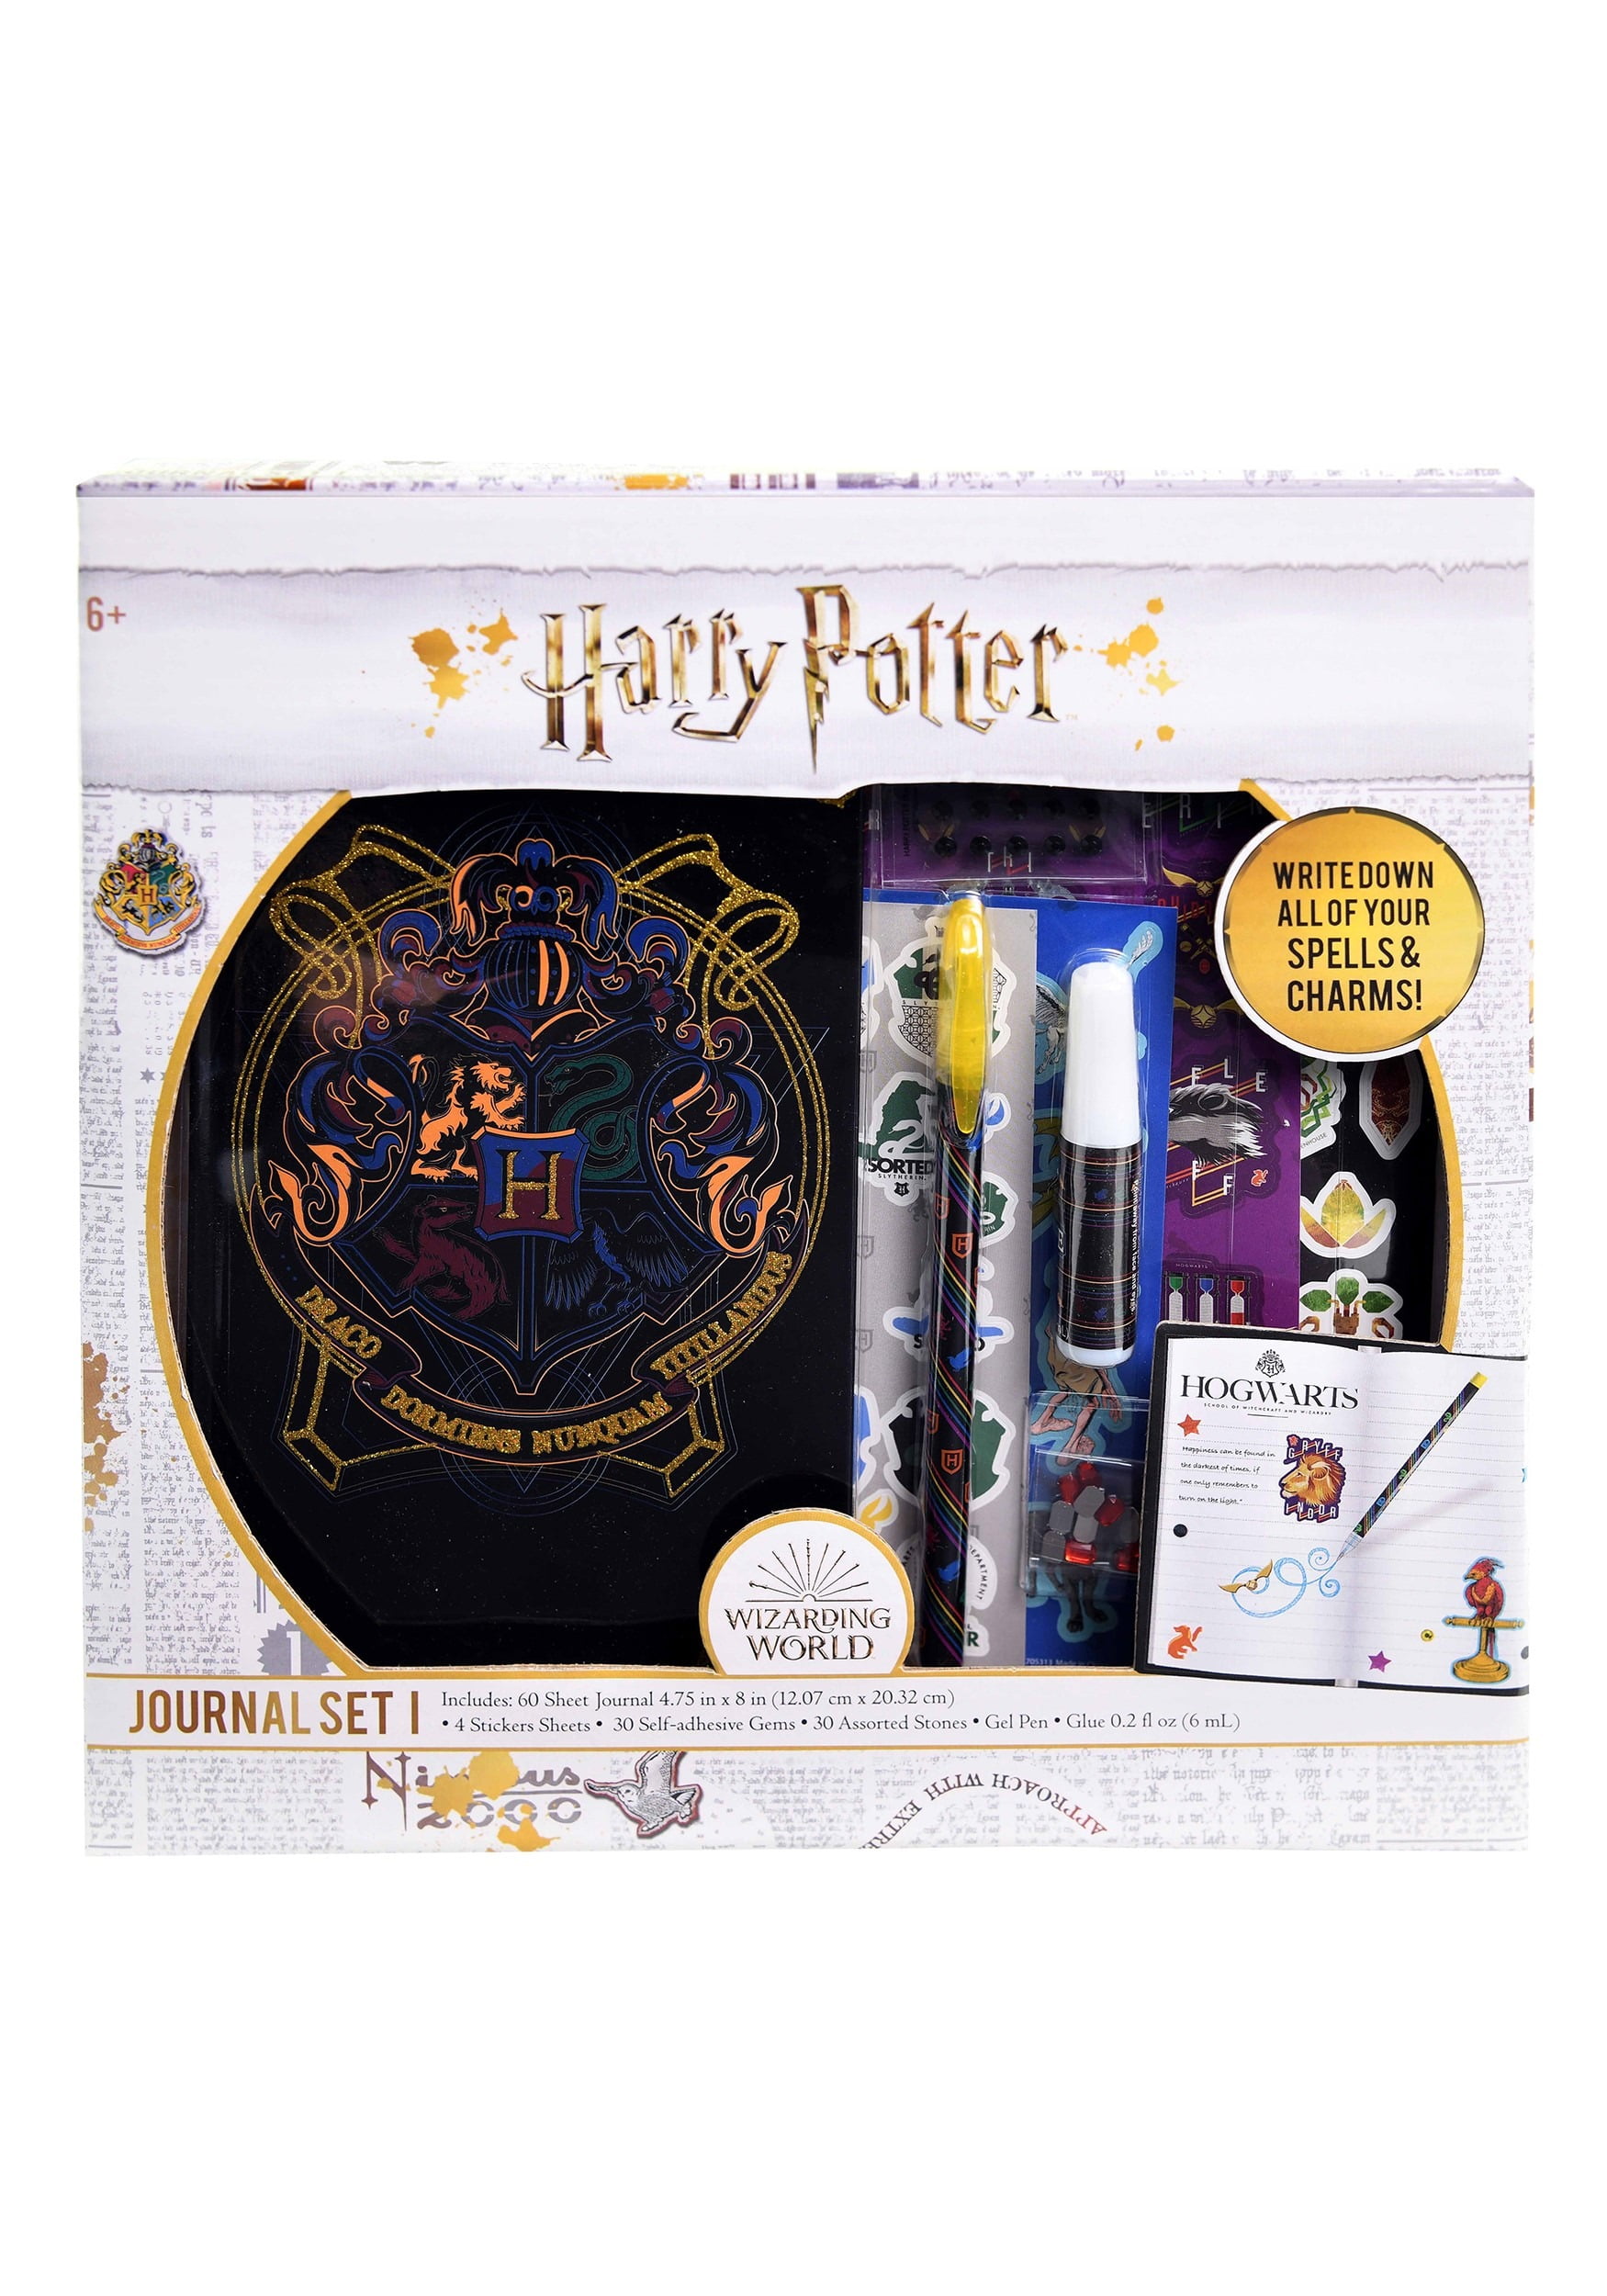 2 SETS Harry Potter Journal Gift Set of 3 Books SEALED 